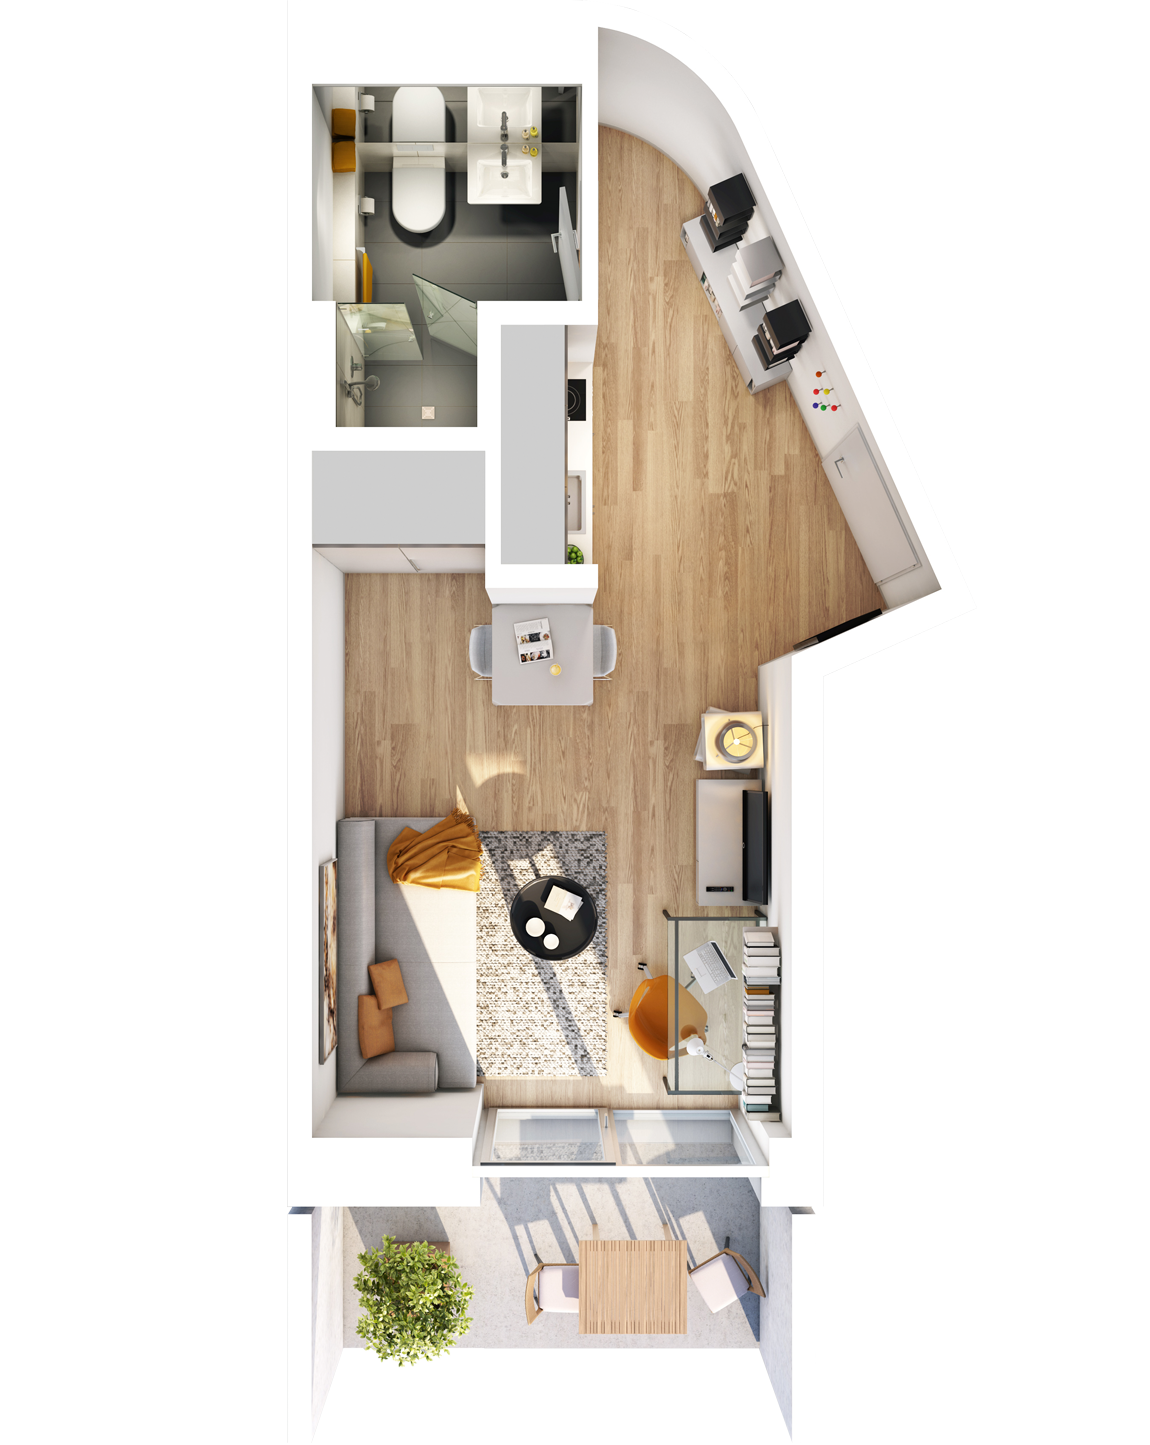 Visualisierung Beispiel 1-Zimmer-Wohnung Typ D im außergewöhnlichen Schnitt mit Bad, separater Küche, Wohnbereich und Balkon im studiosus 5 Apartmenthaus in Augsburg